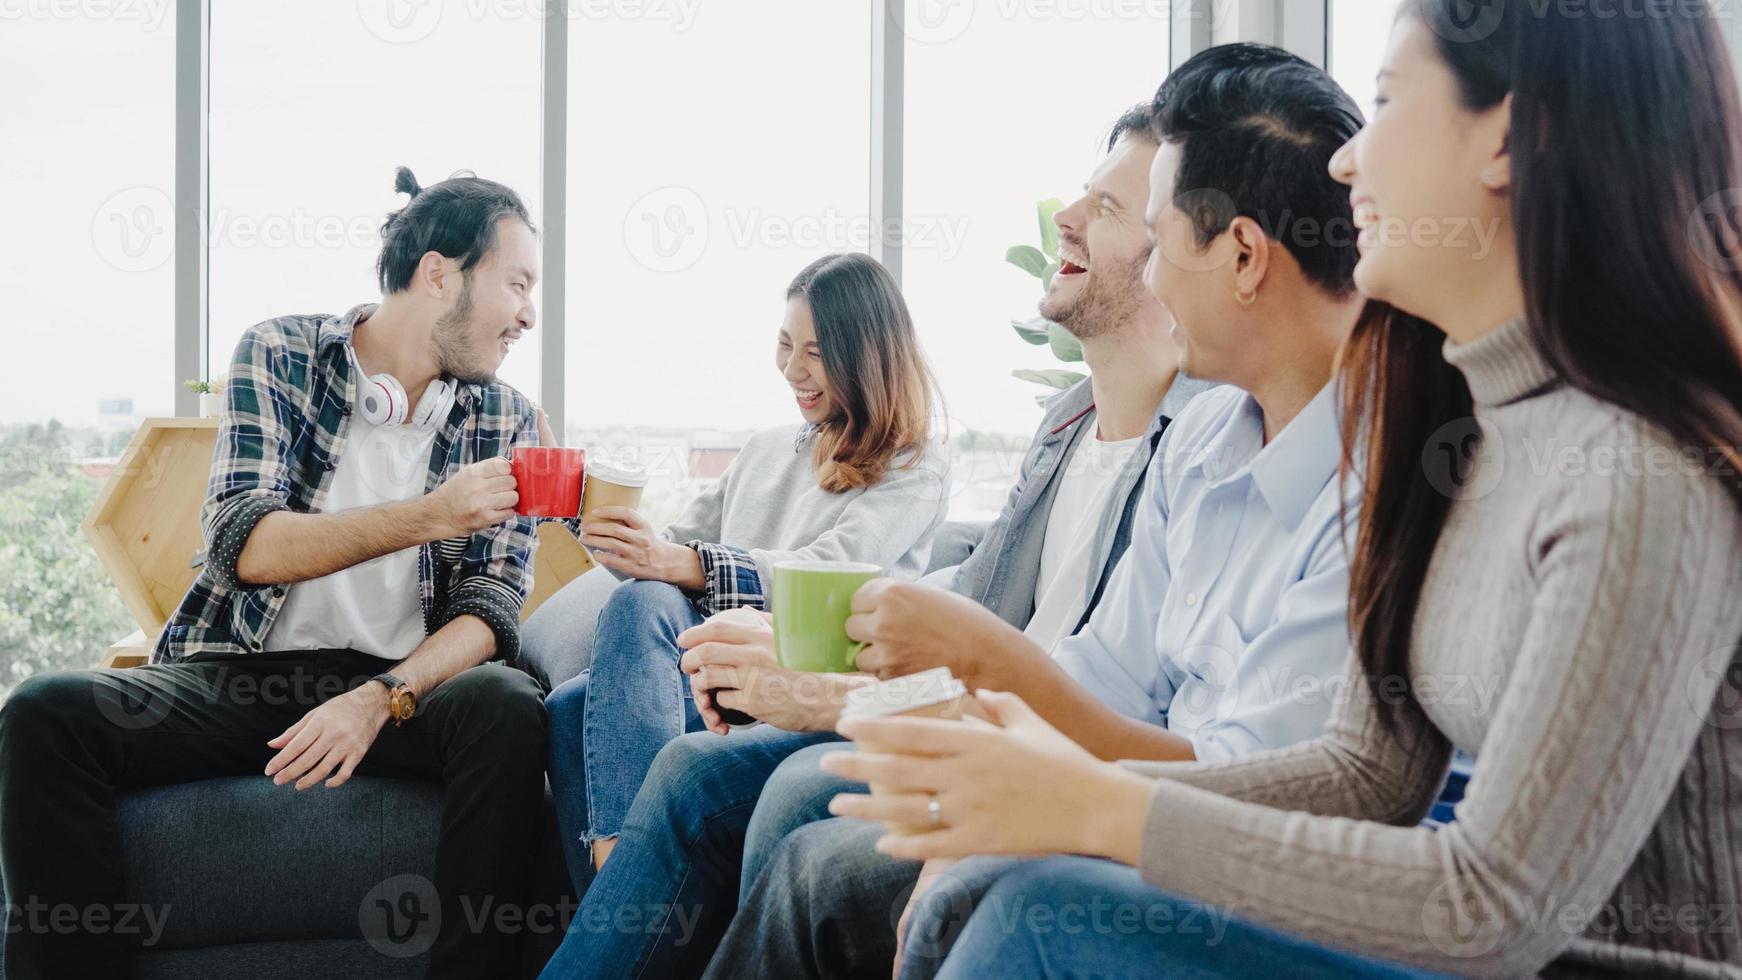 diversità di giovani gruppo squadra in possesso di tazze di caffè e discutere di qualcosa con un sorriso mentre era seduto sul divano in ufficio. pausa caffè presso l'ufficio creativo. foto